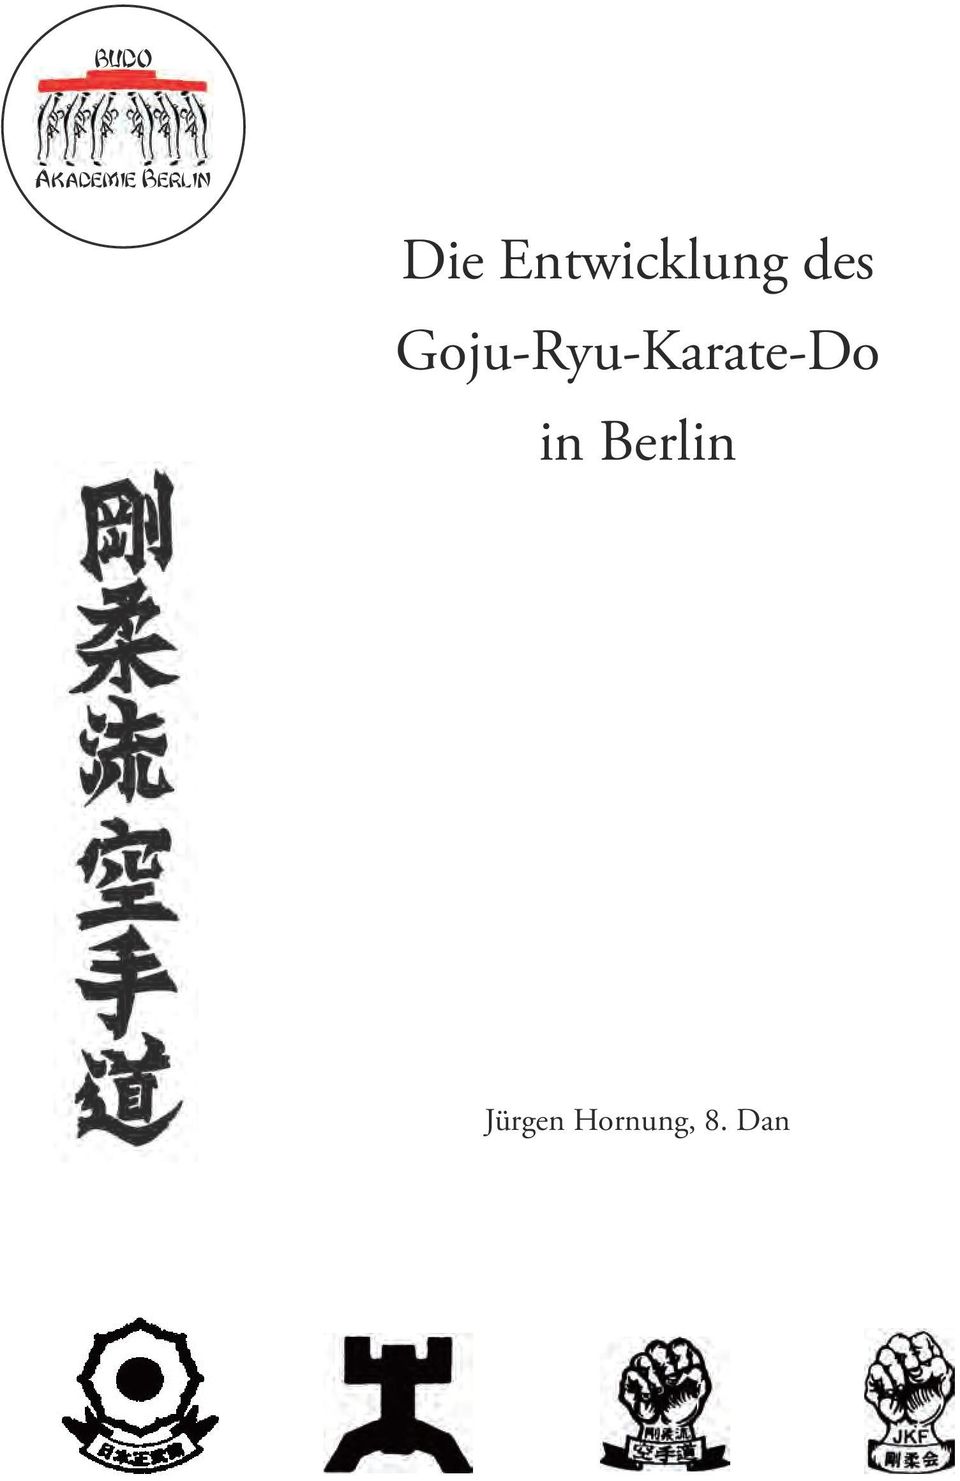 Goju-Ryu-Karate-Do in